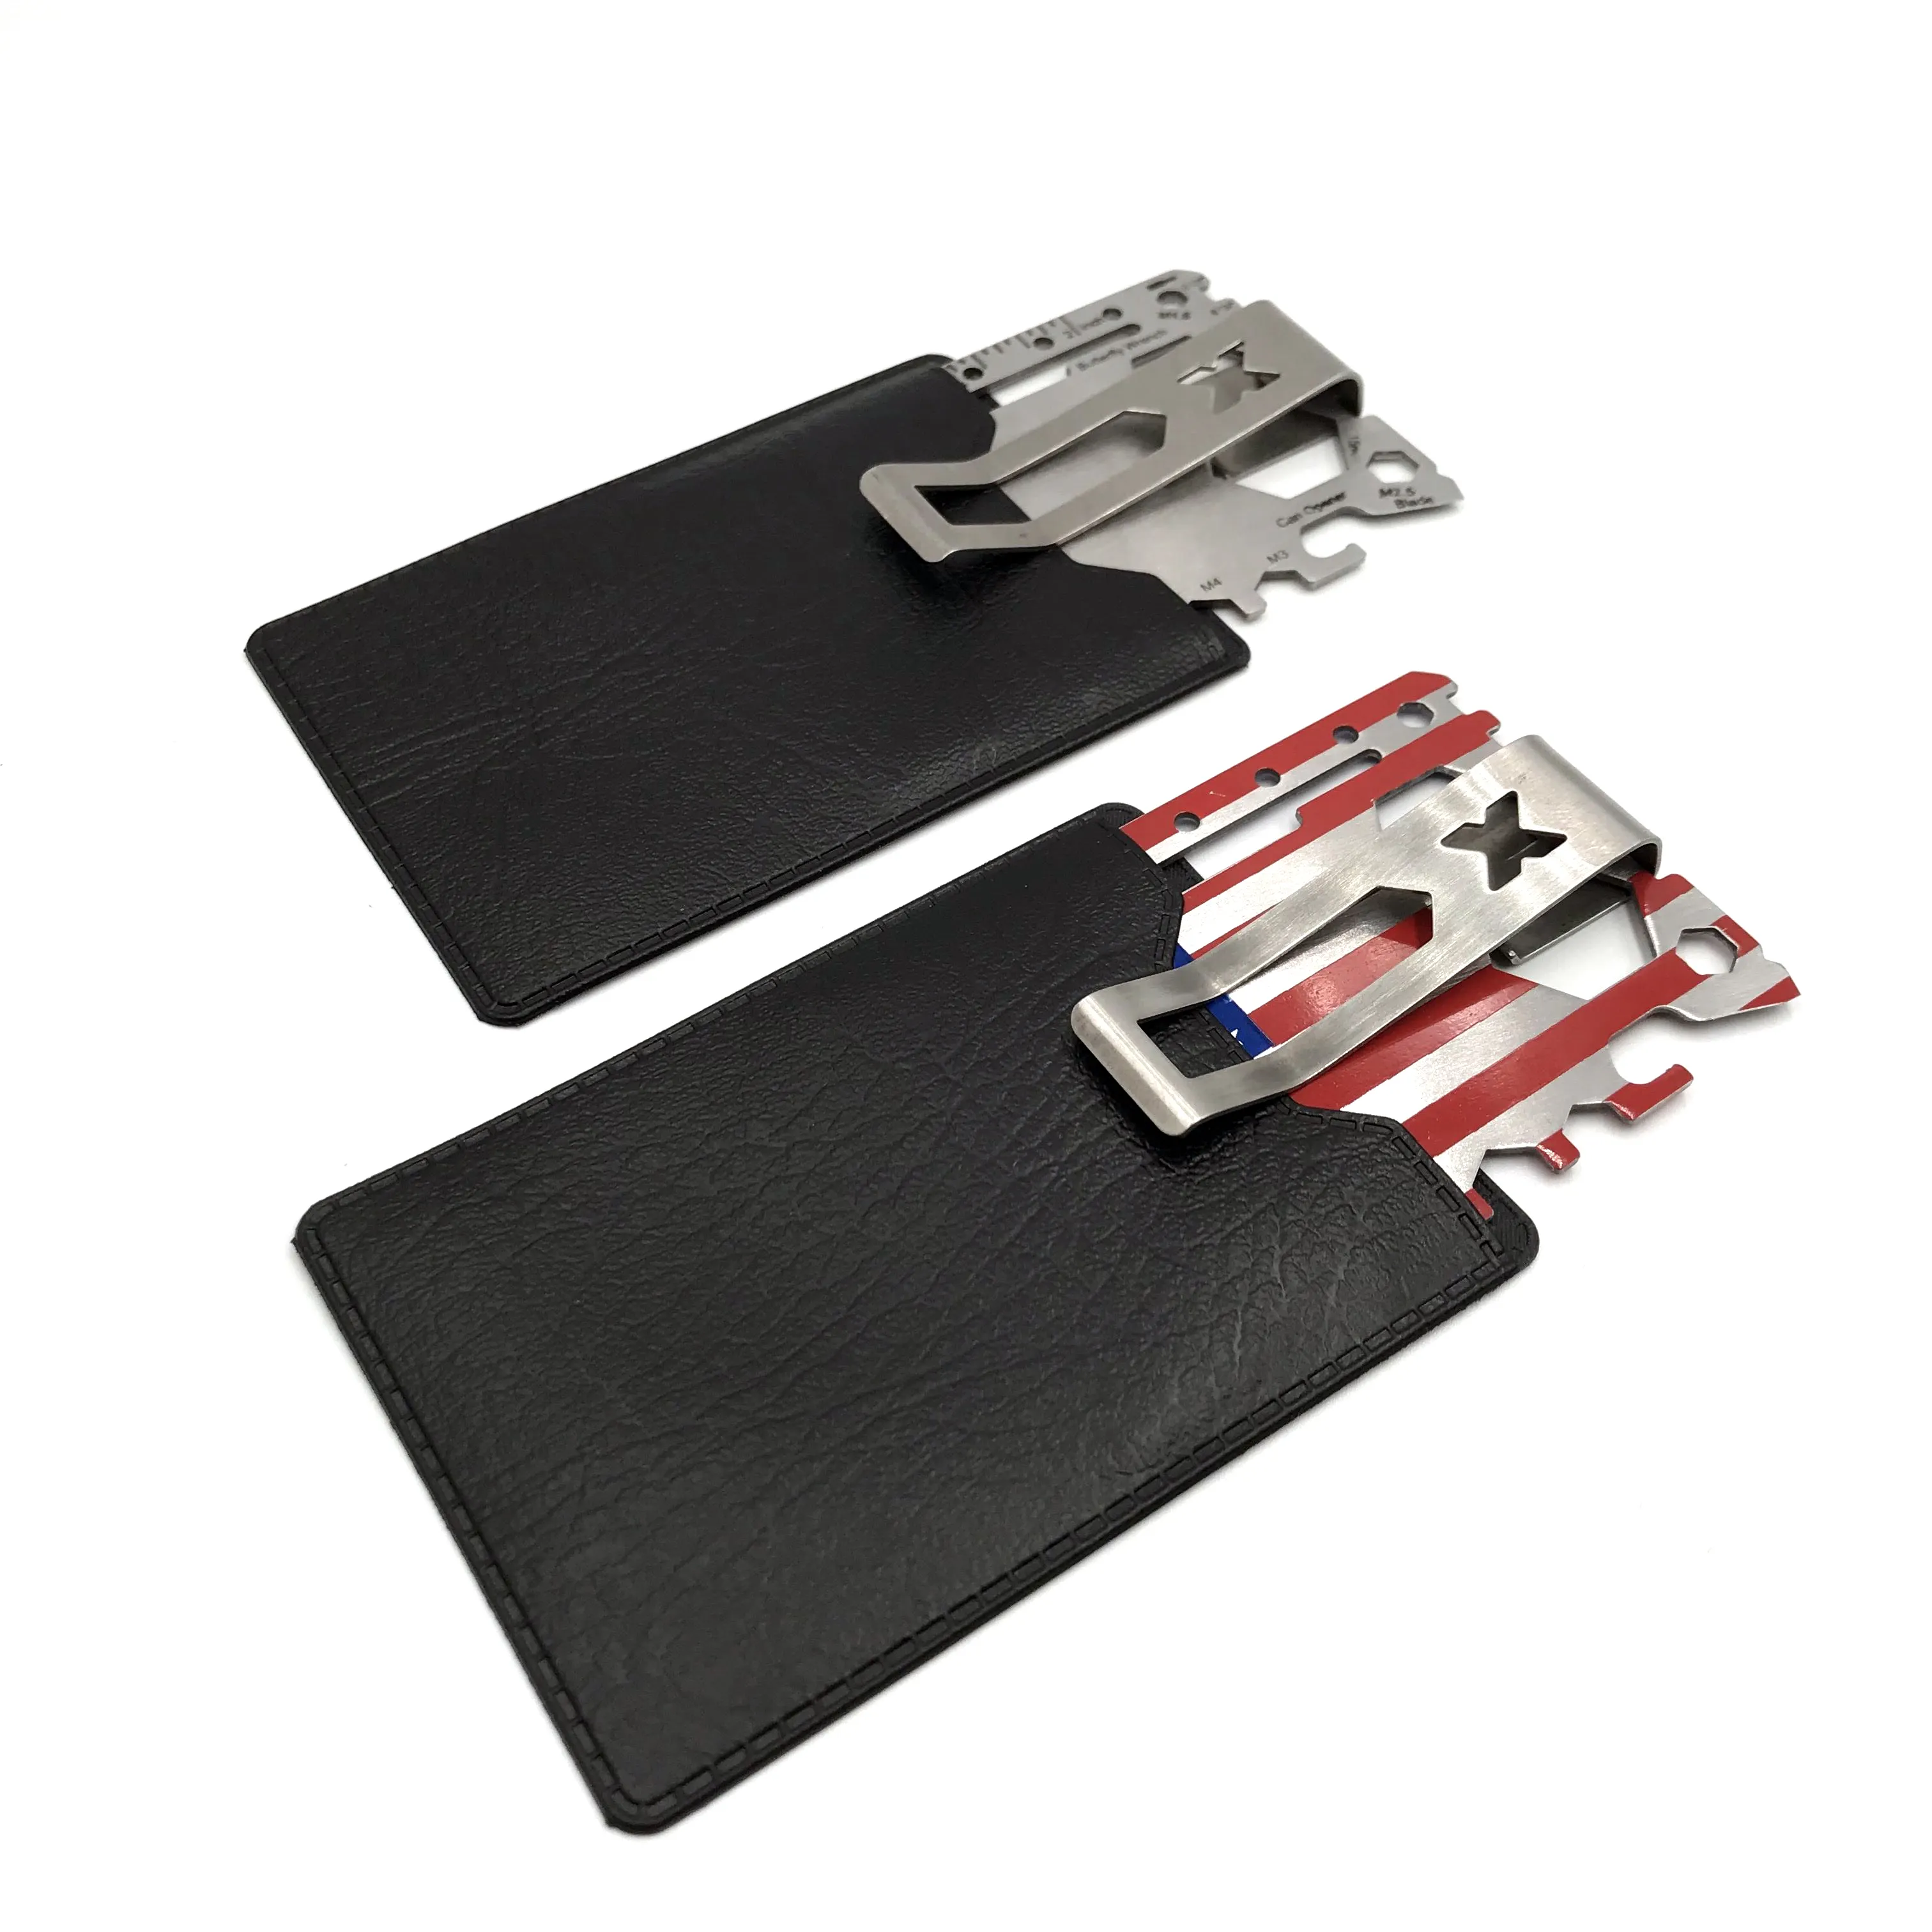 कस्टम सबसे अच्छा उपहार बहु बटुआ आकार चाकू क्रेडिट कार्ड जीवन रक्षा पॉकेट उपकरण कार्ड